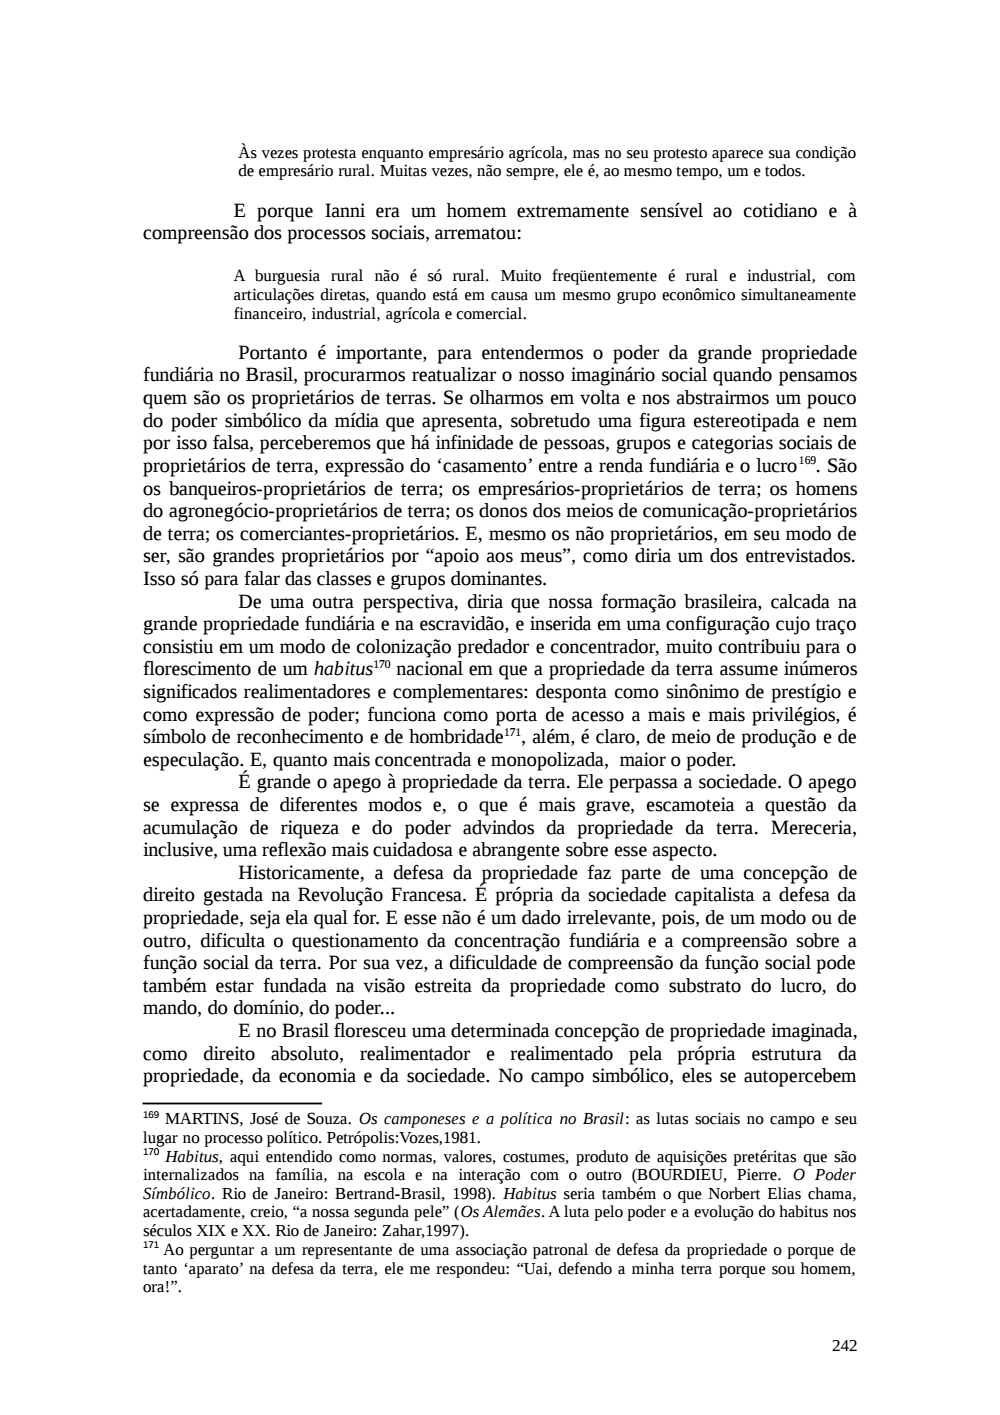 Page 242 from Relatório final da comissão